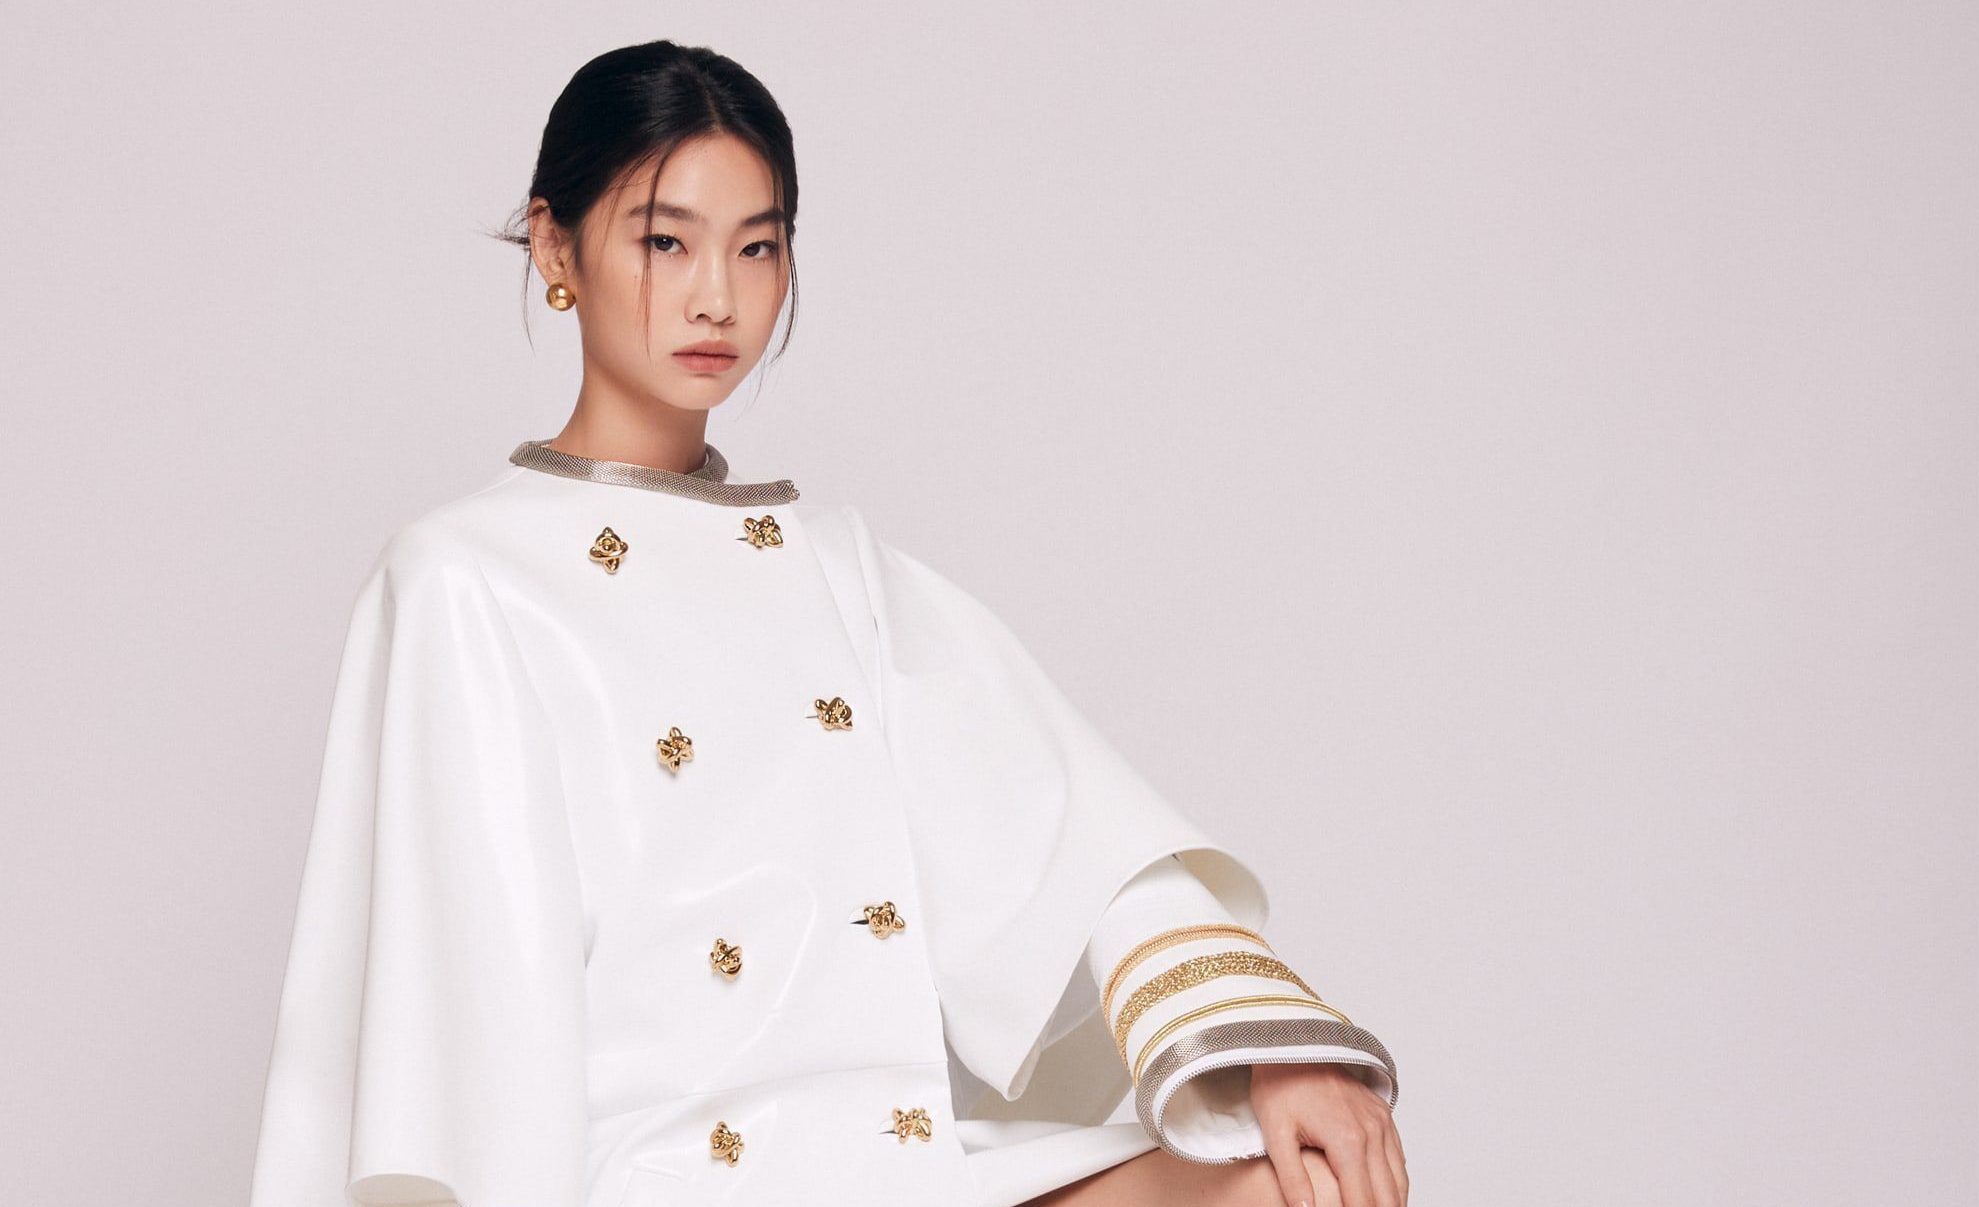 Ho Yeon Jung (Squid Game) devient égérie Louis Vuitton !